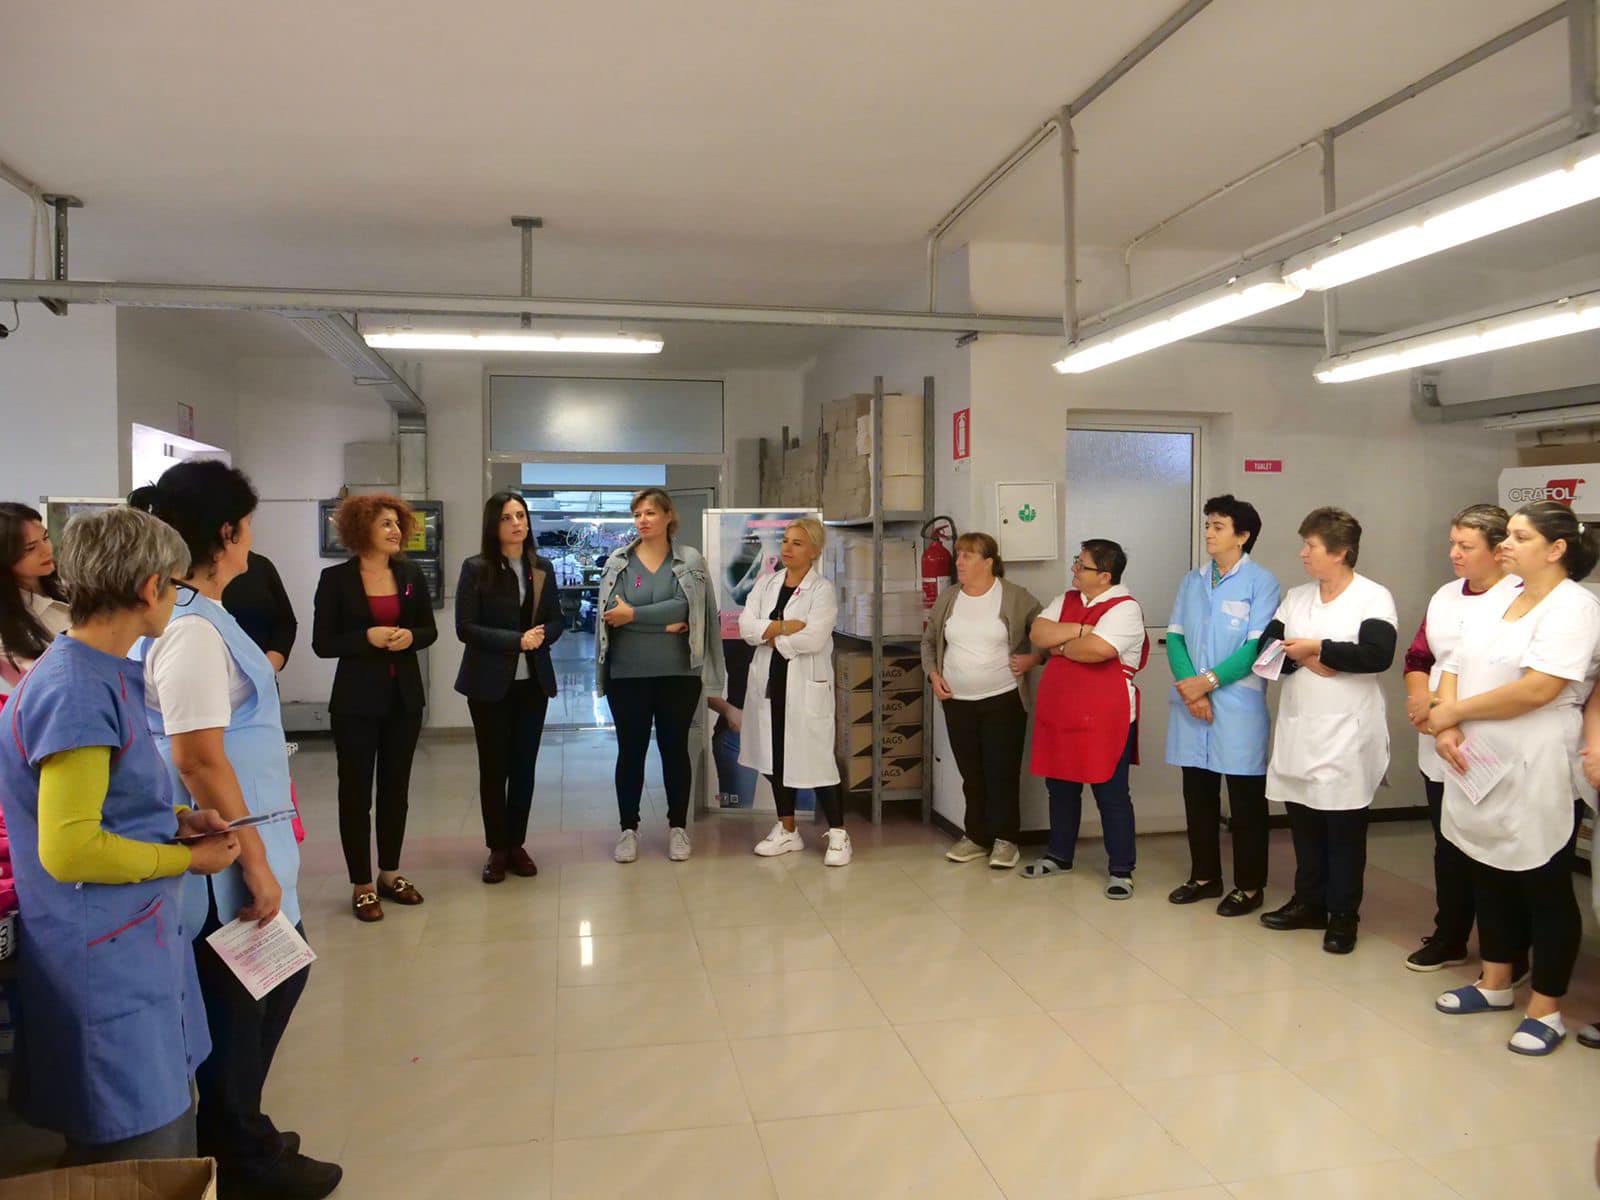 Tetori rozë, Sako vizitë në një fasoneri: Kontrollohuni, në spitalin e Durrësit mamografia bëhet falas gjatë gjithë vitit